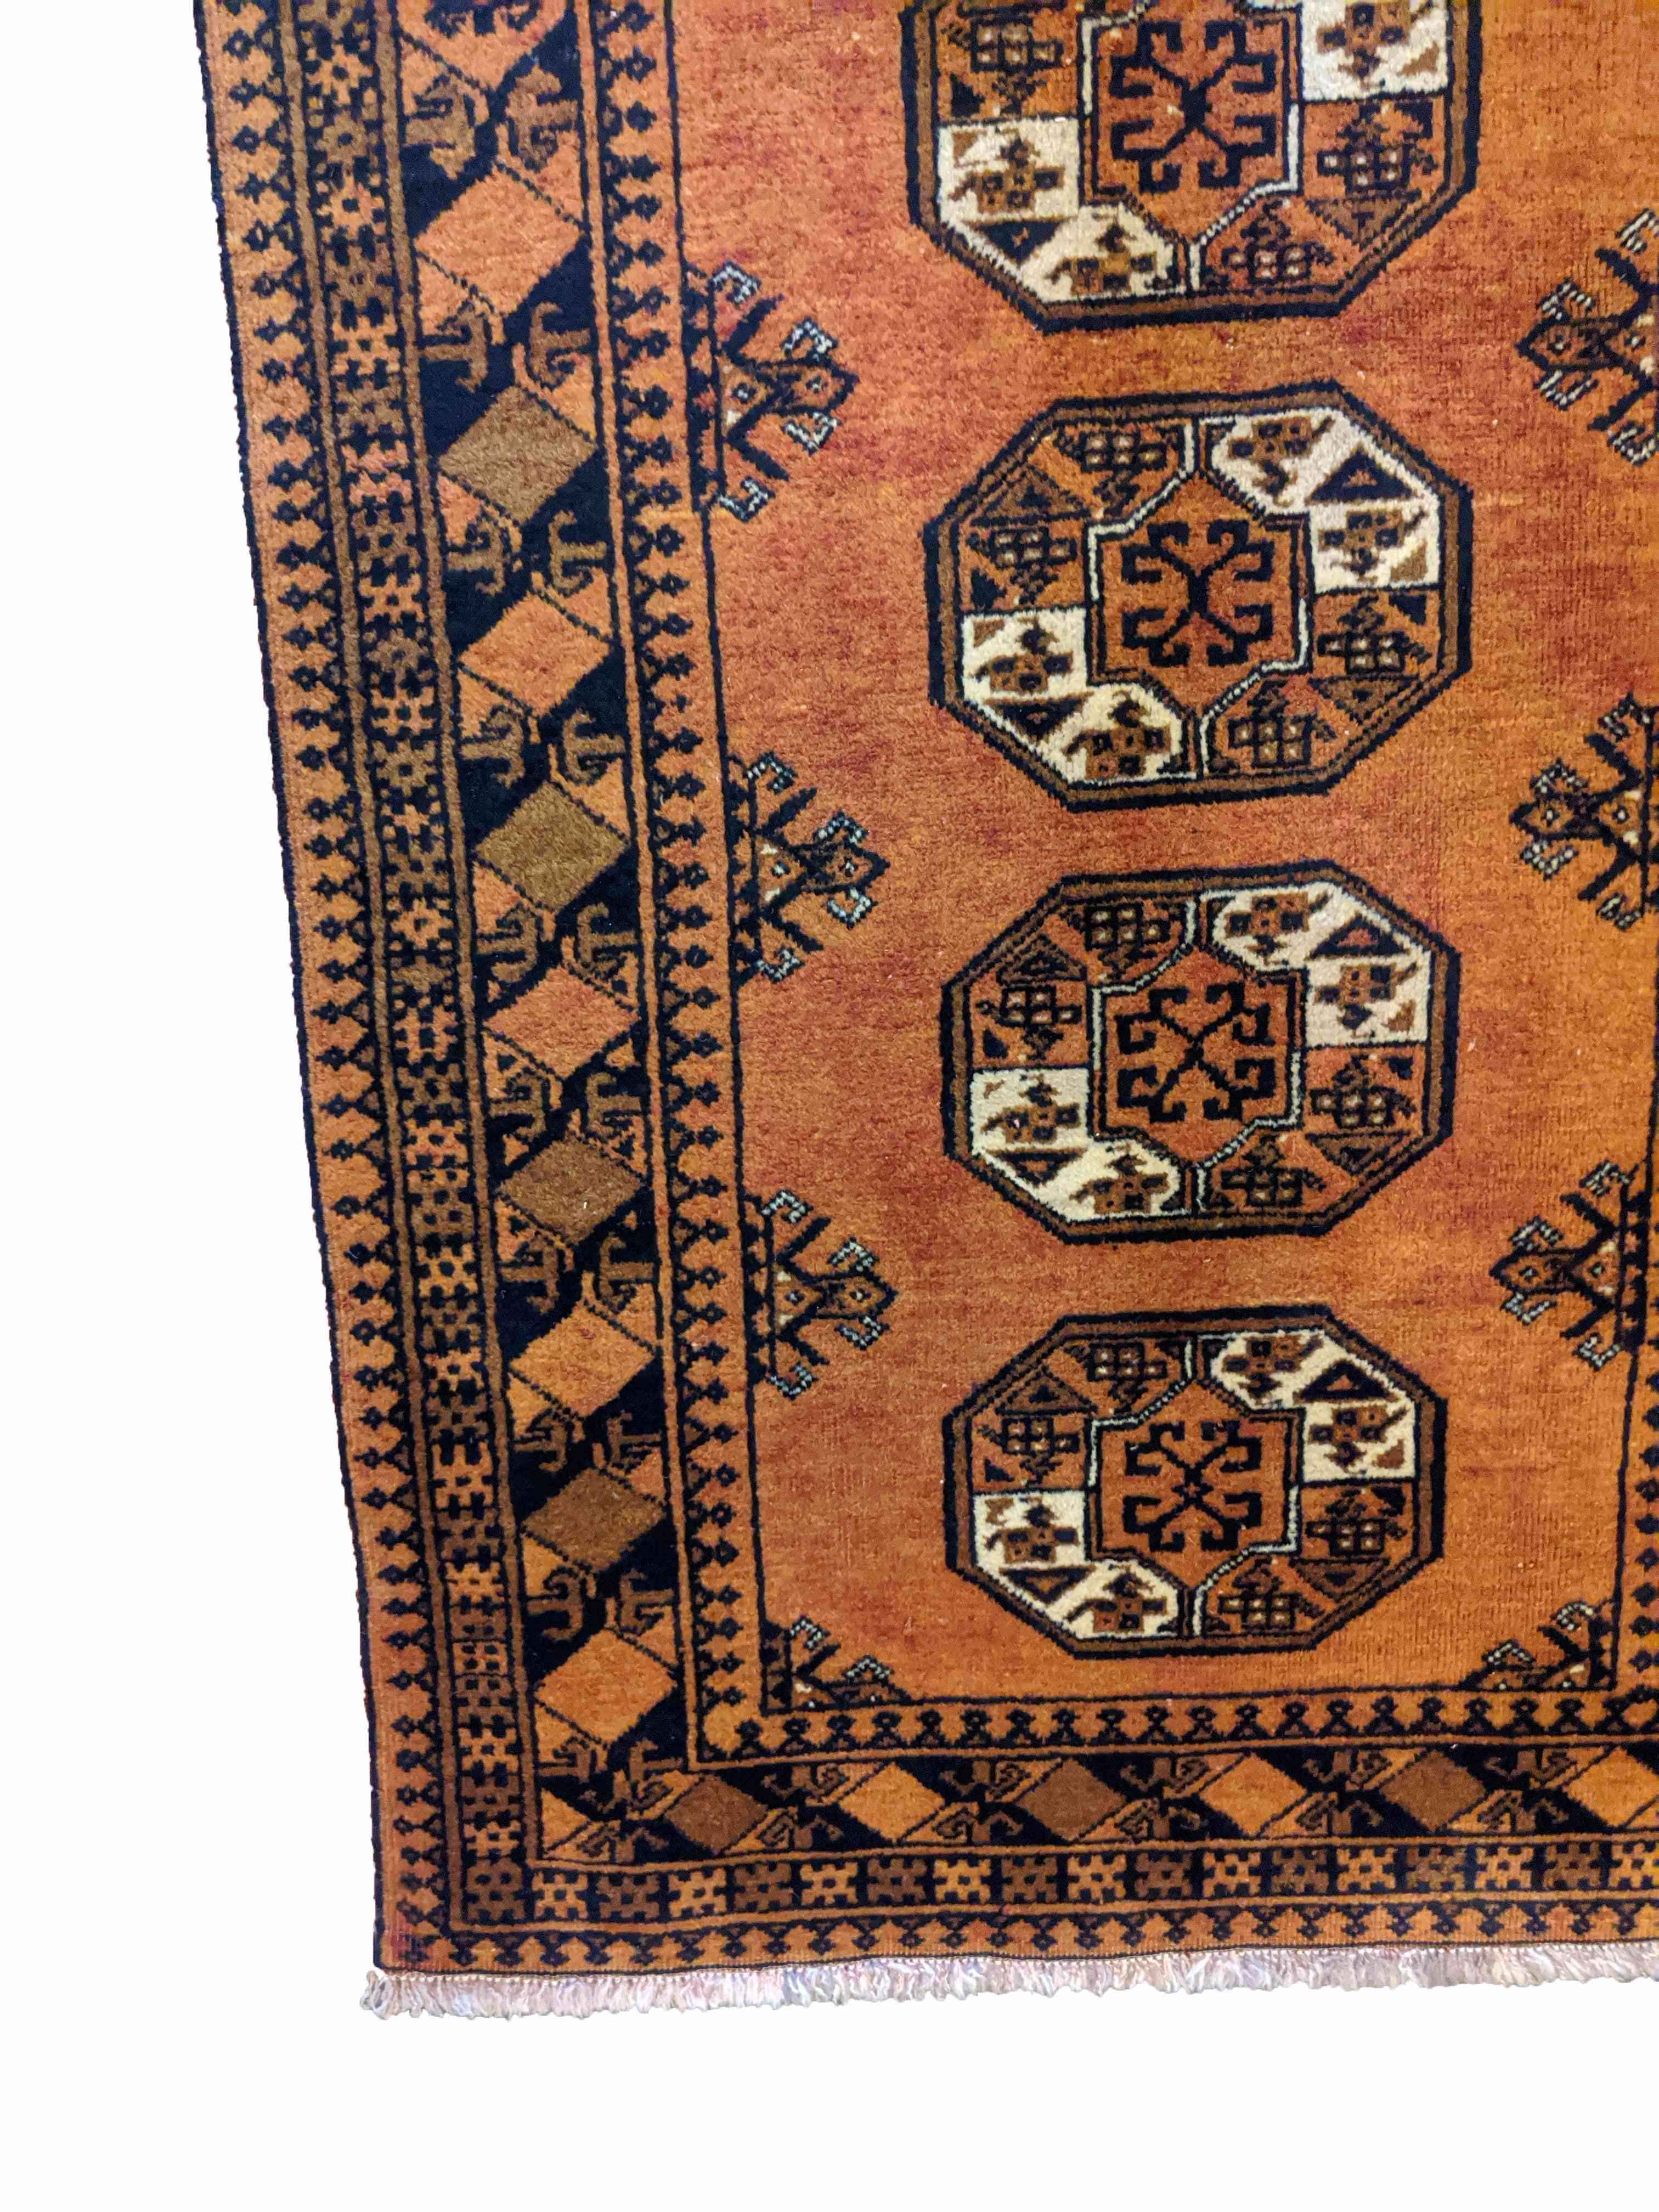 145 x 170 cm Golden Afghan Tribal Orange Rug - Rugmaster